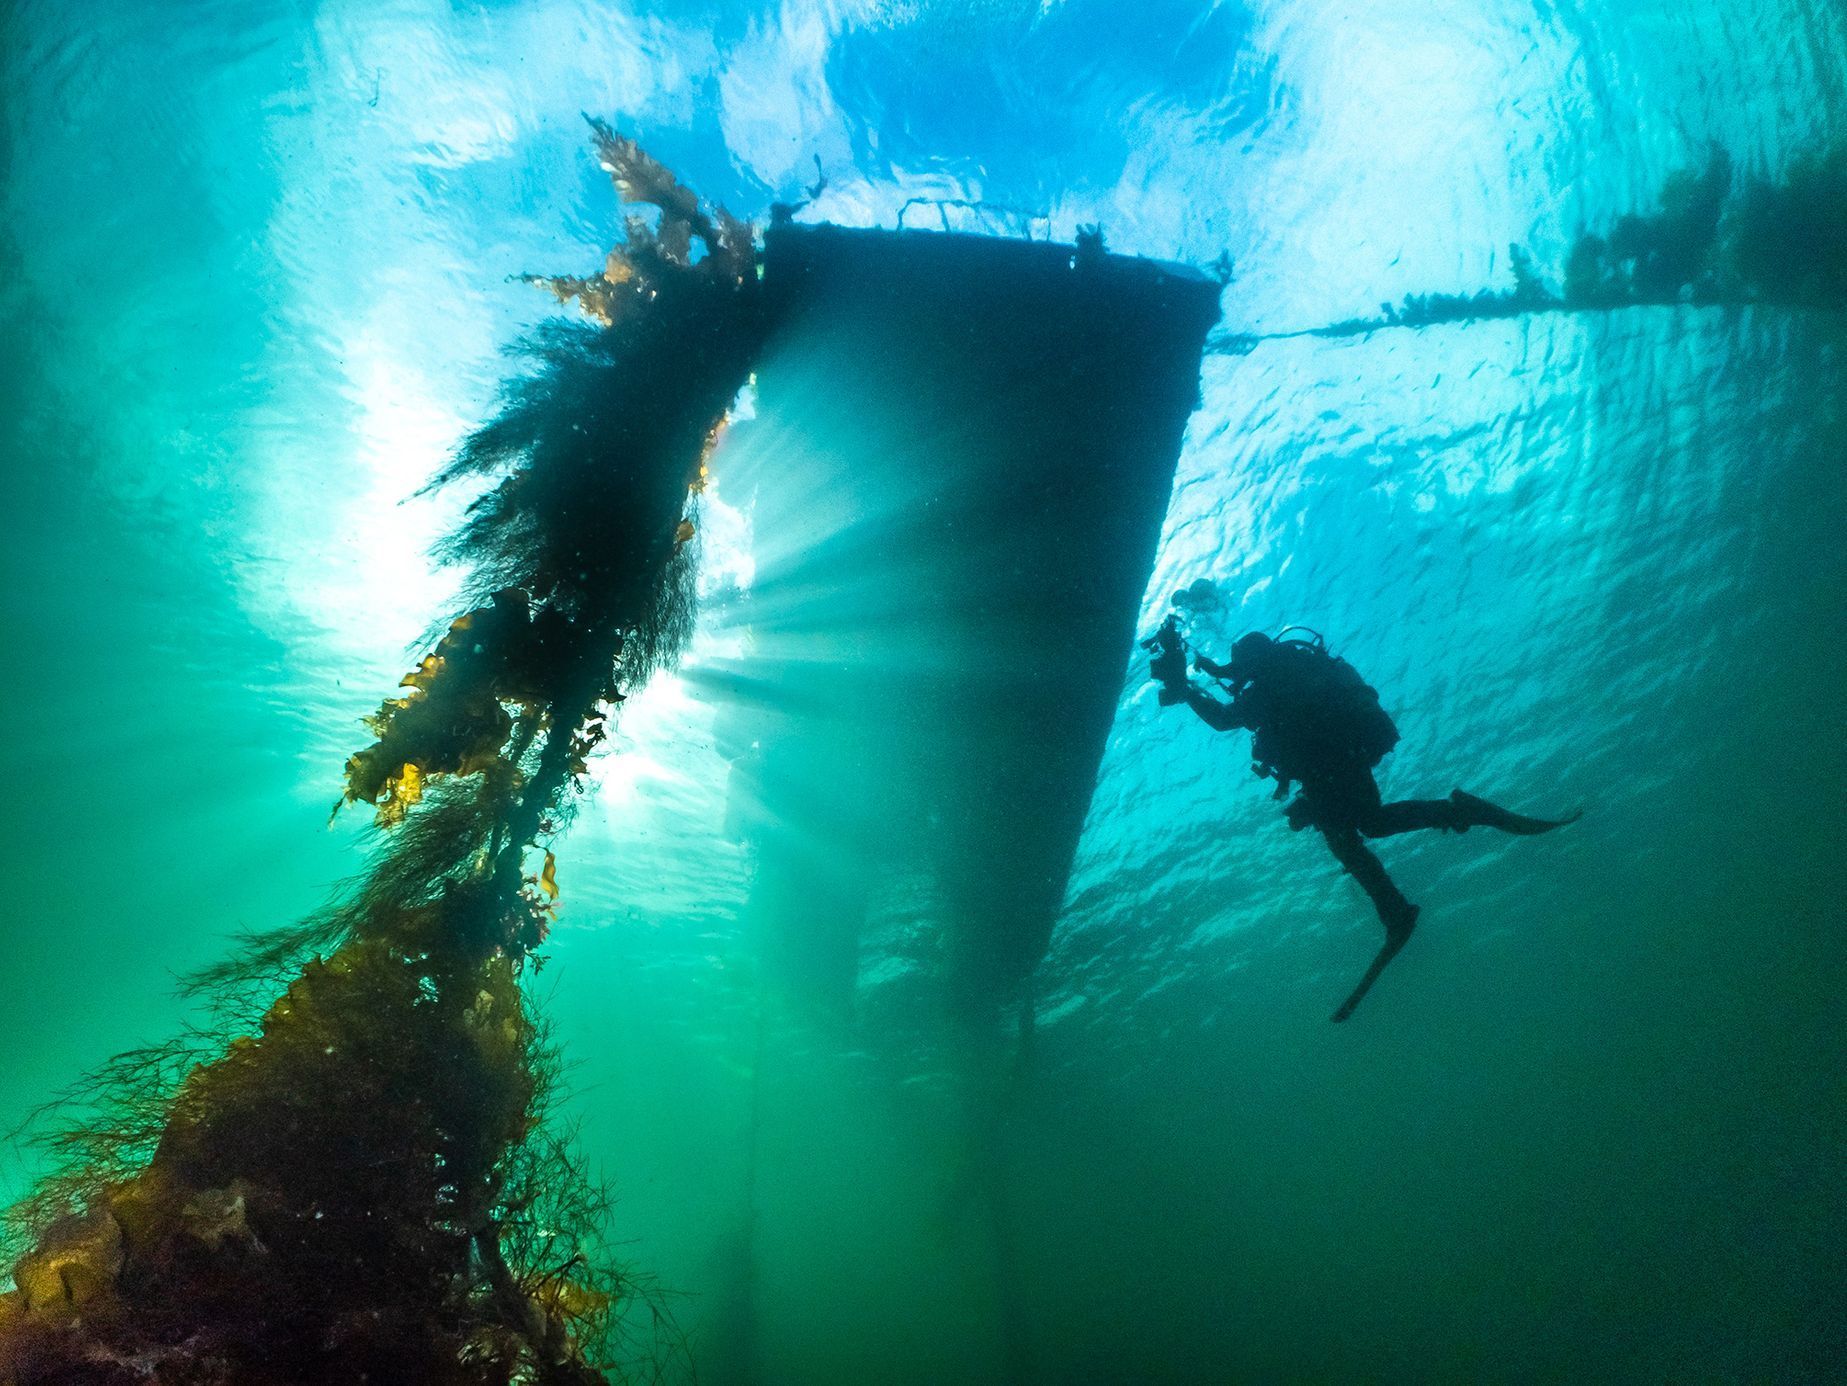 Vítězové soutěže Underwater Photographer of the Year 2021